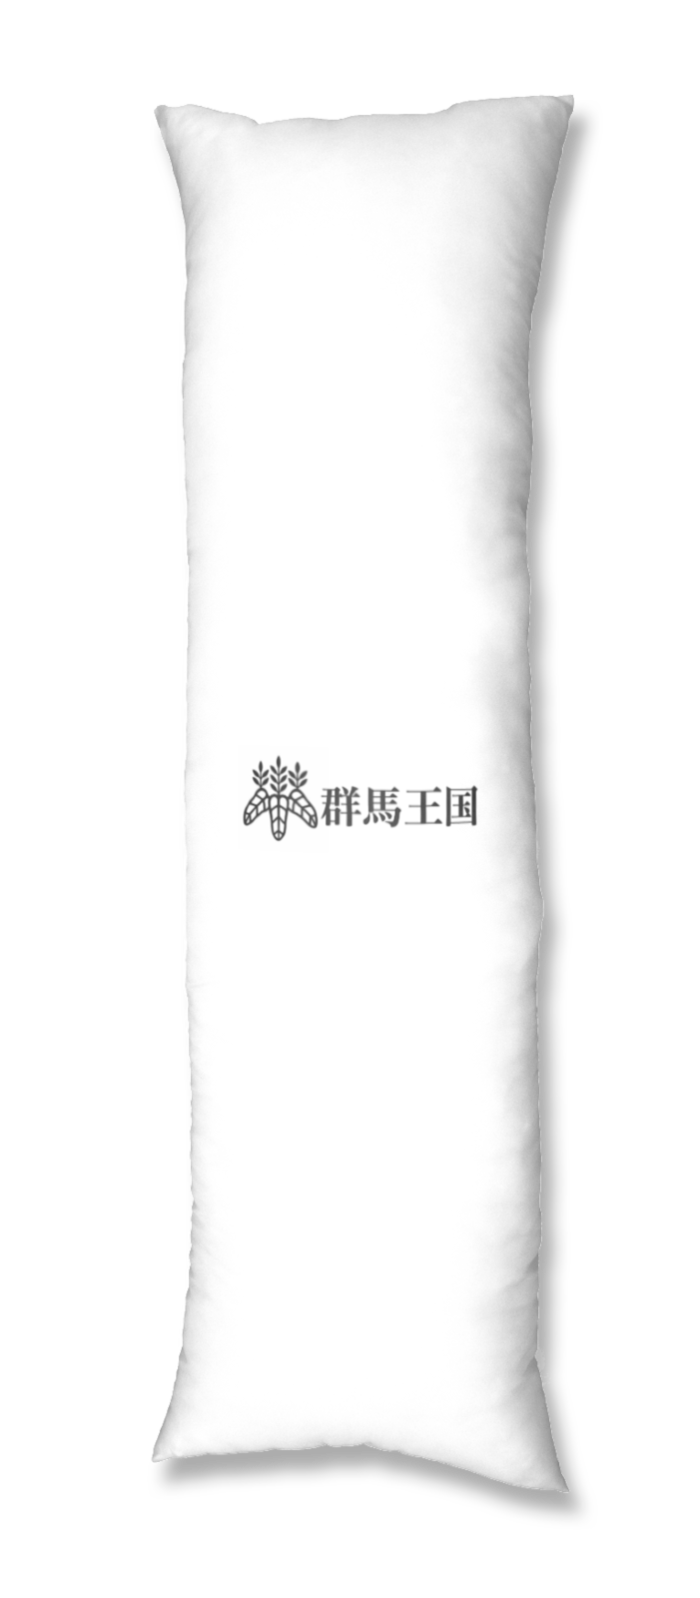 抱き枕カバー - 500x1600(mm)